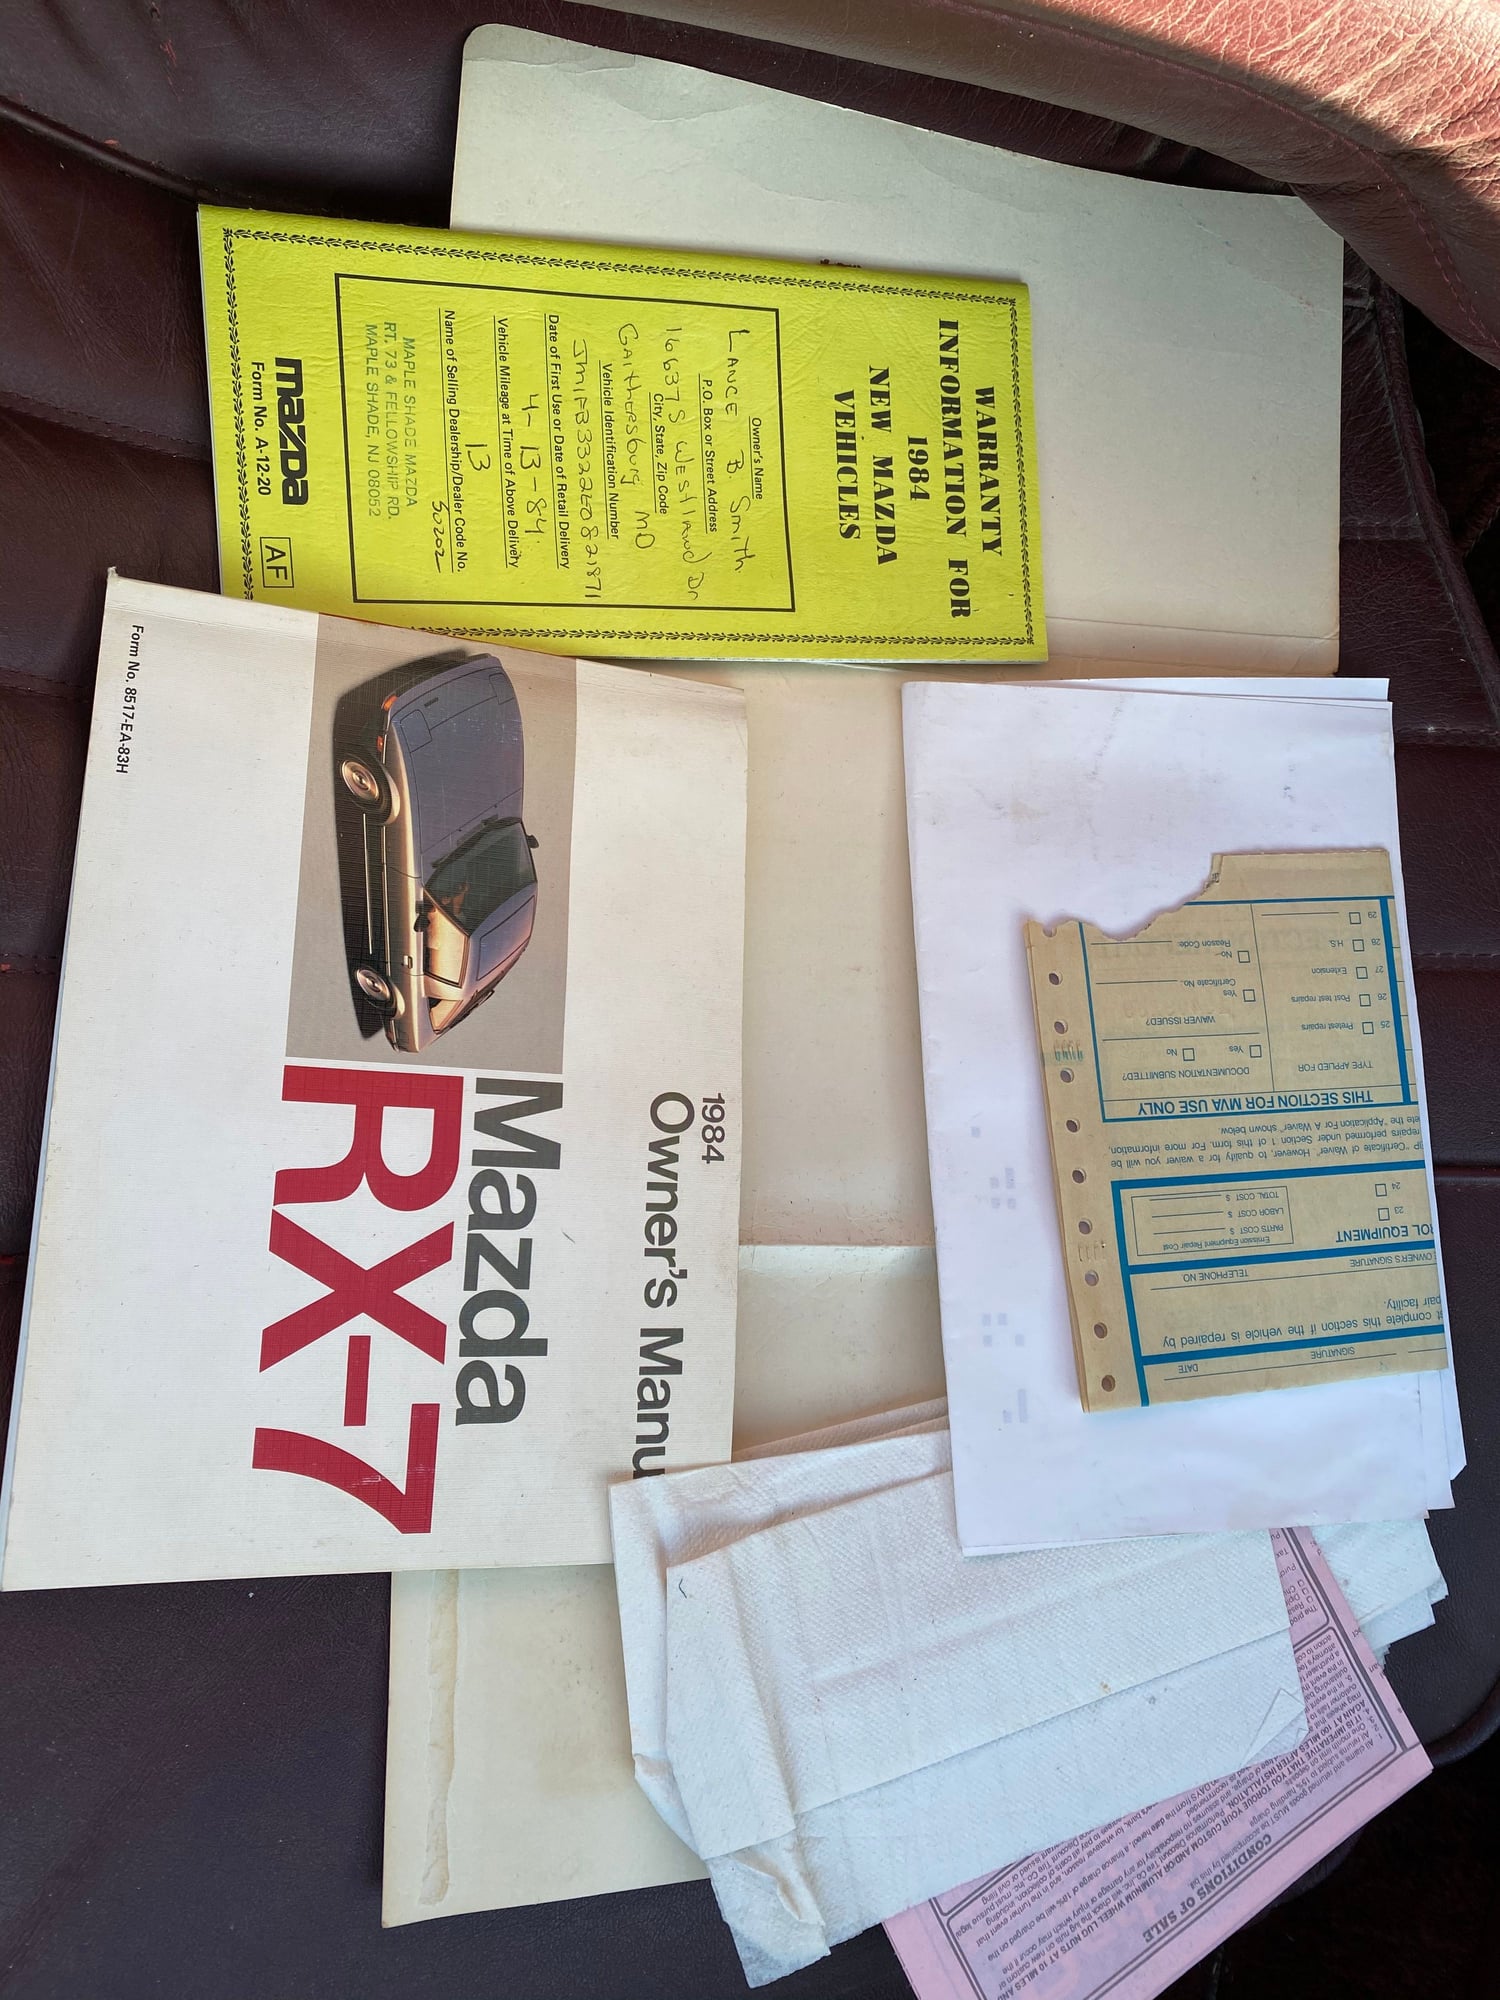 1984 Mazda RX-7 - Barn find Original GSL-SE, 71656 miles - Used - VIN JM1FB3322E0821871 - 71,565 Miles - 2 cyl - 2WD - Manual - Hatchback - Beige - Silver Spring, MD 20902, United States